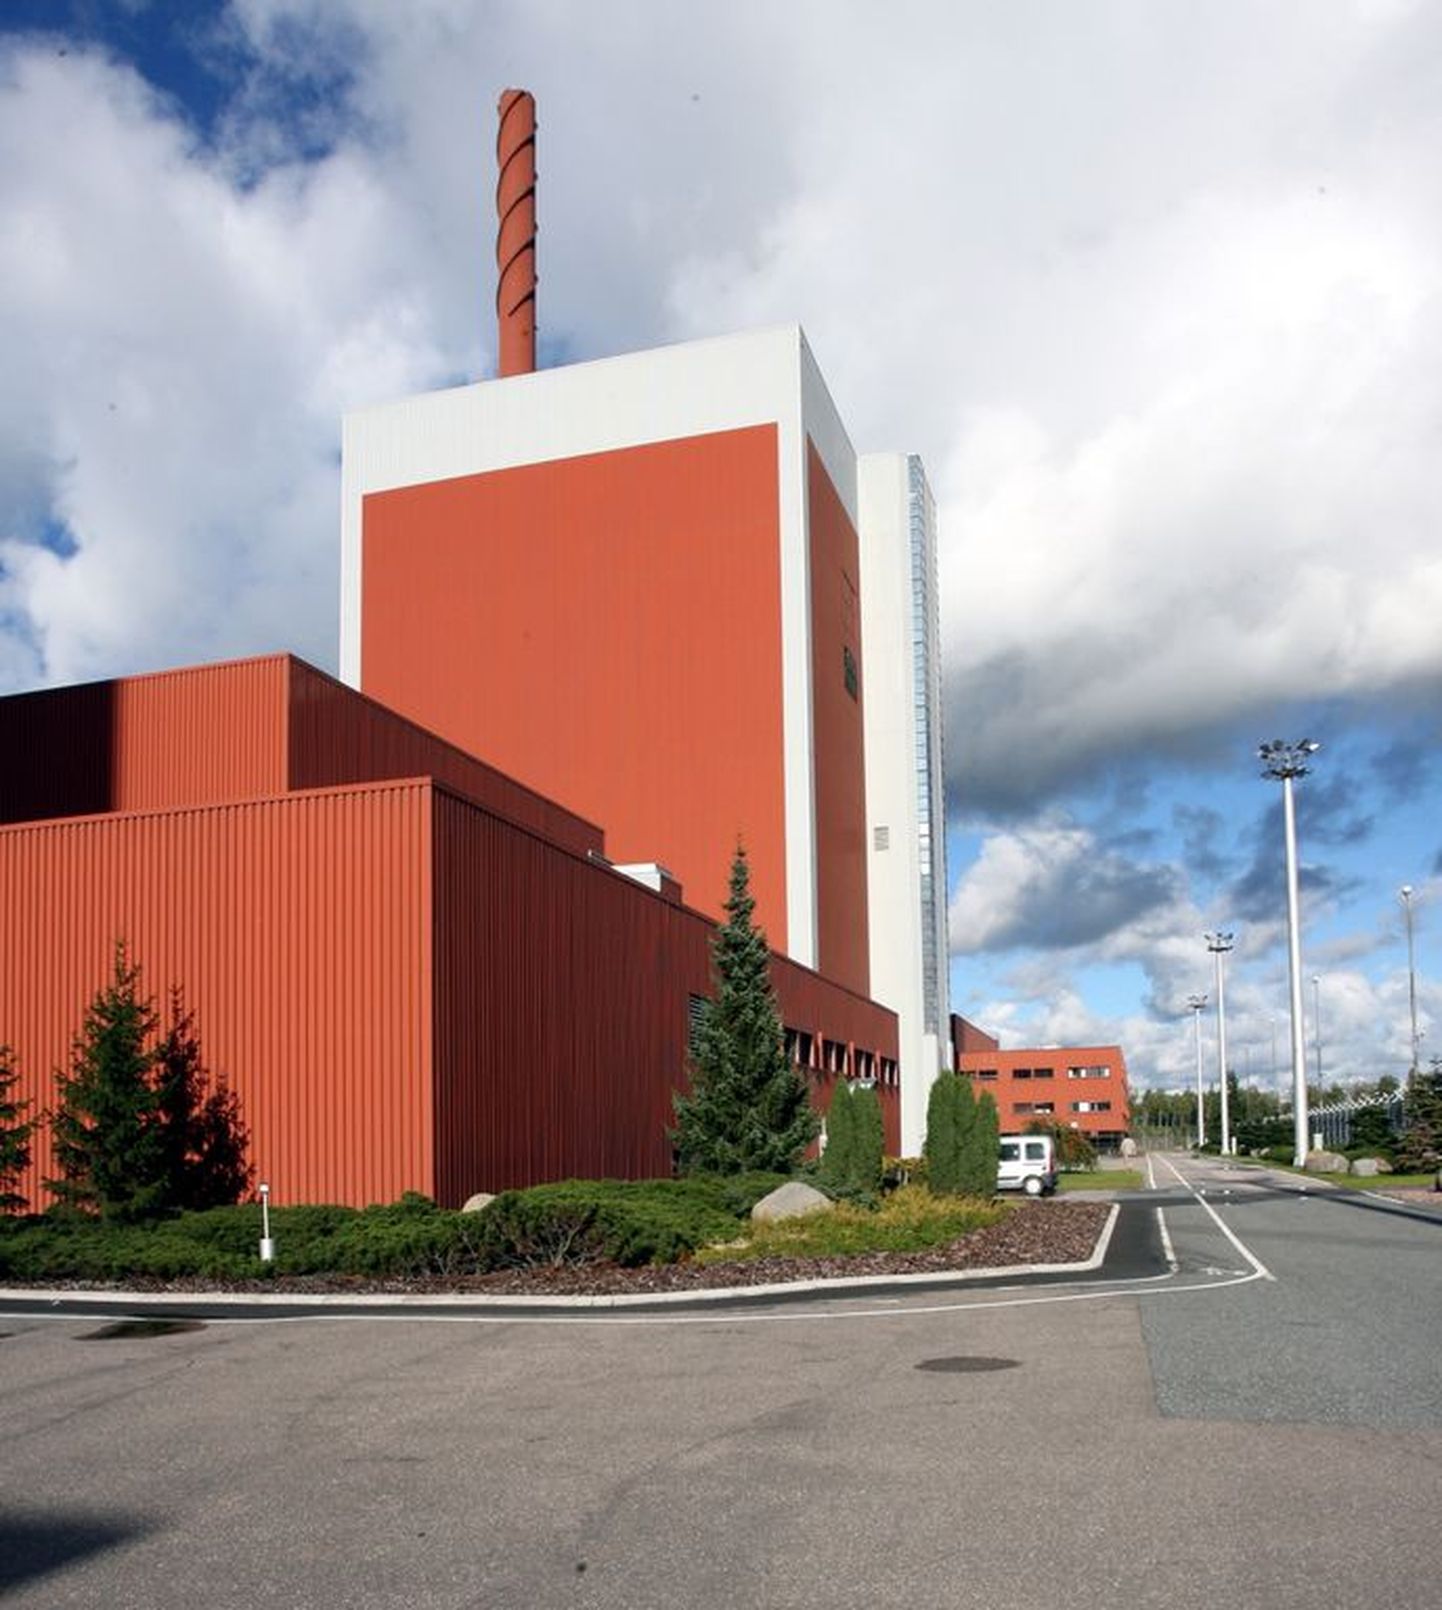 АЭС "Олкилуото" в Финляндии.